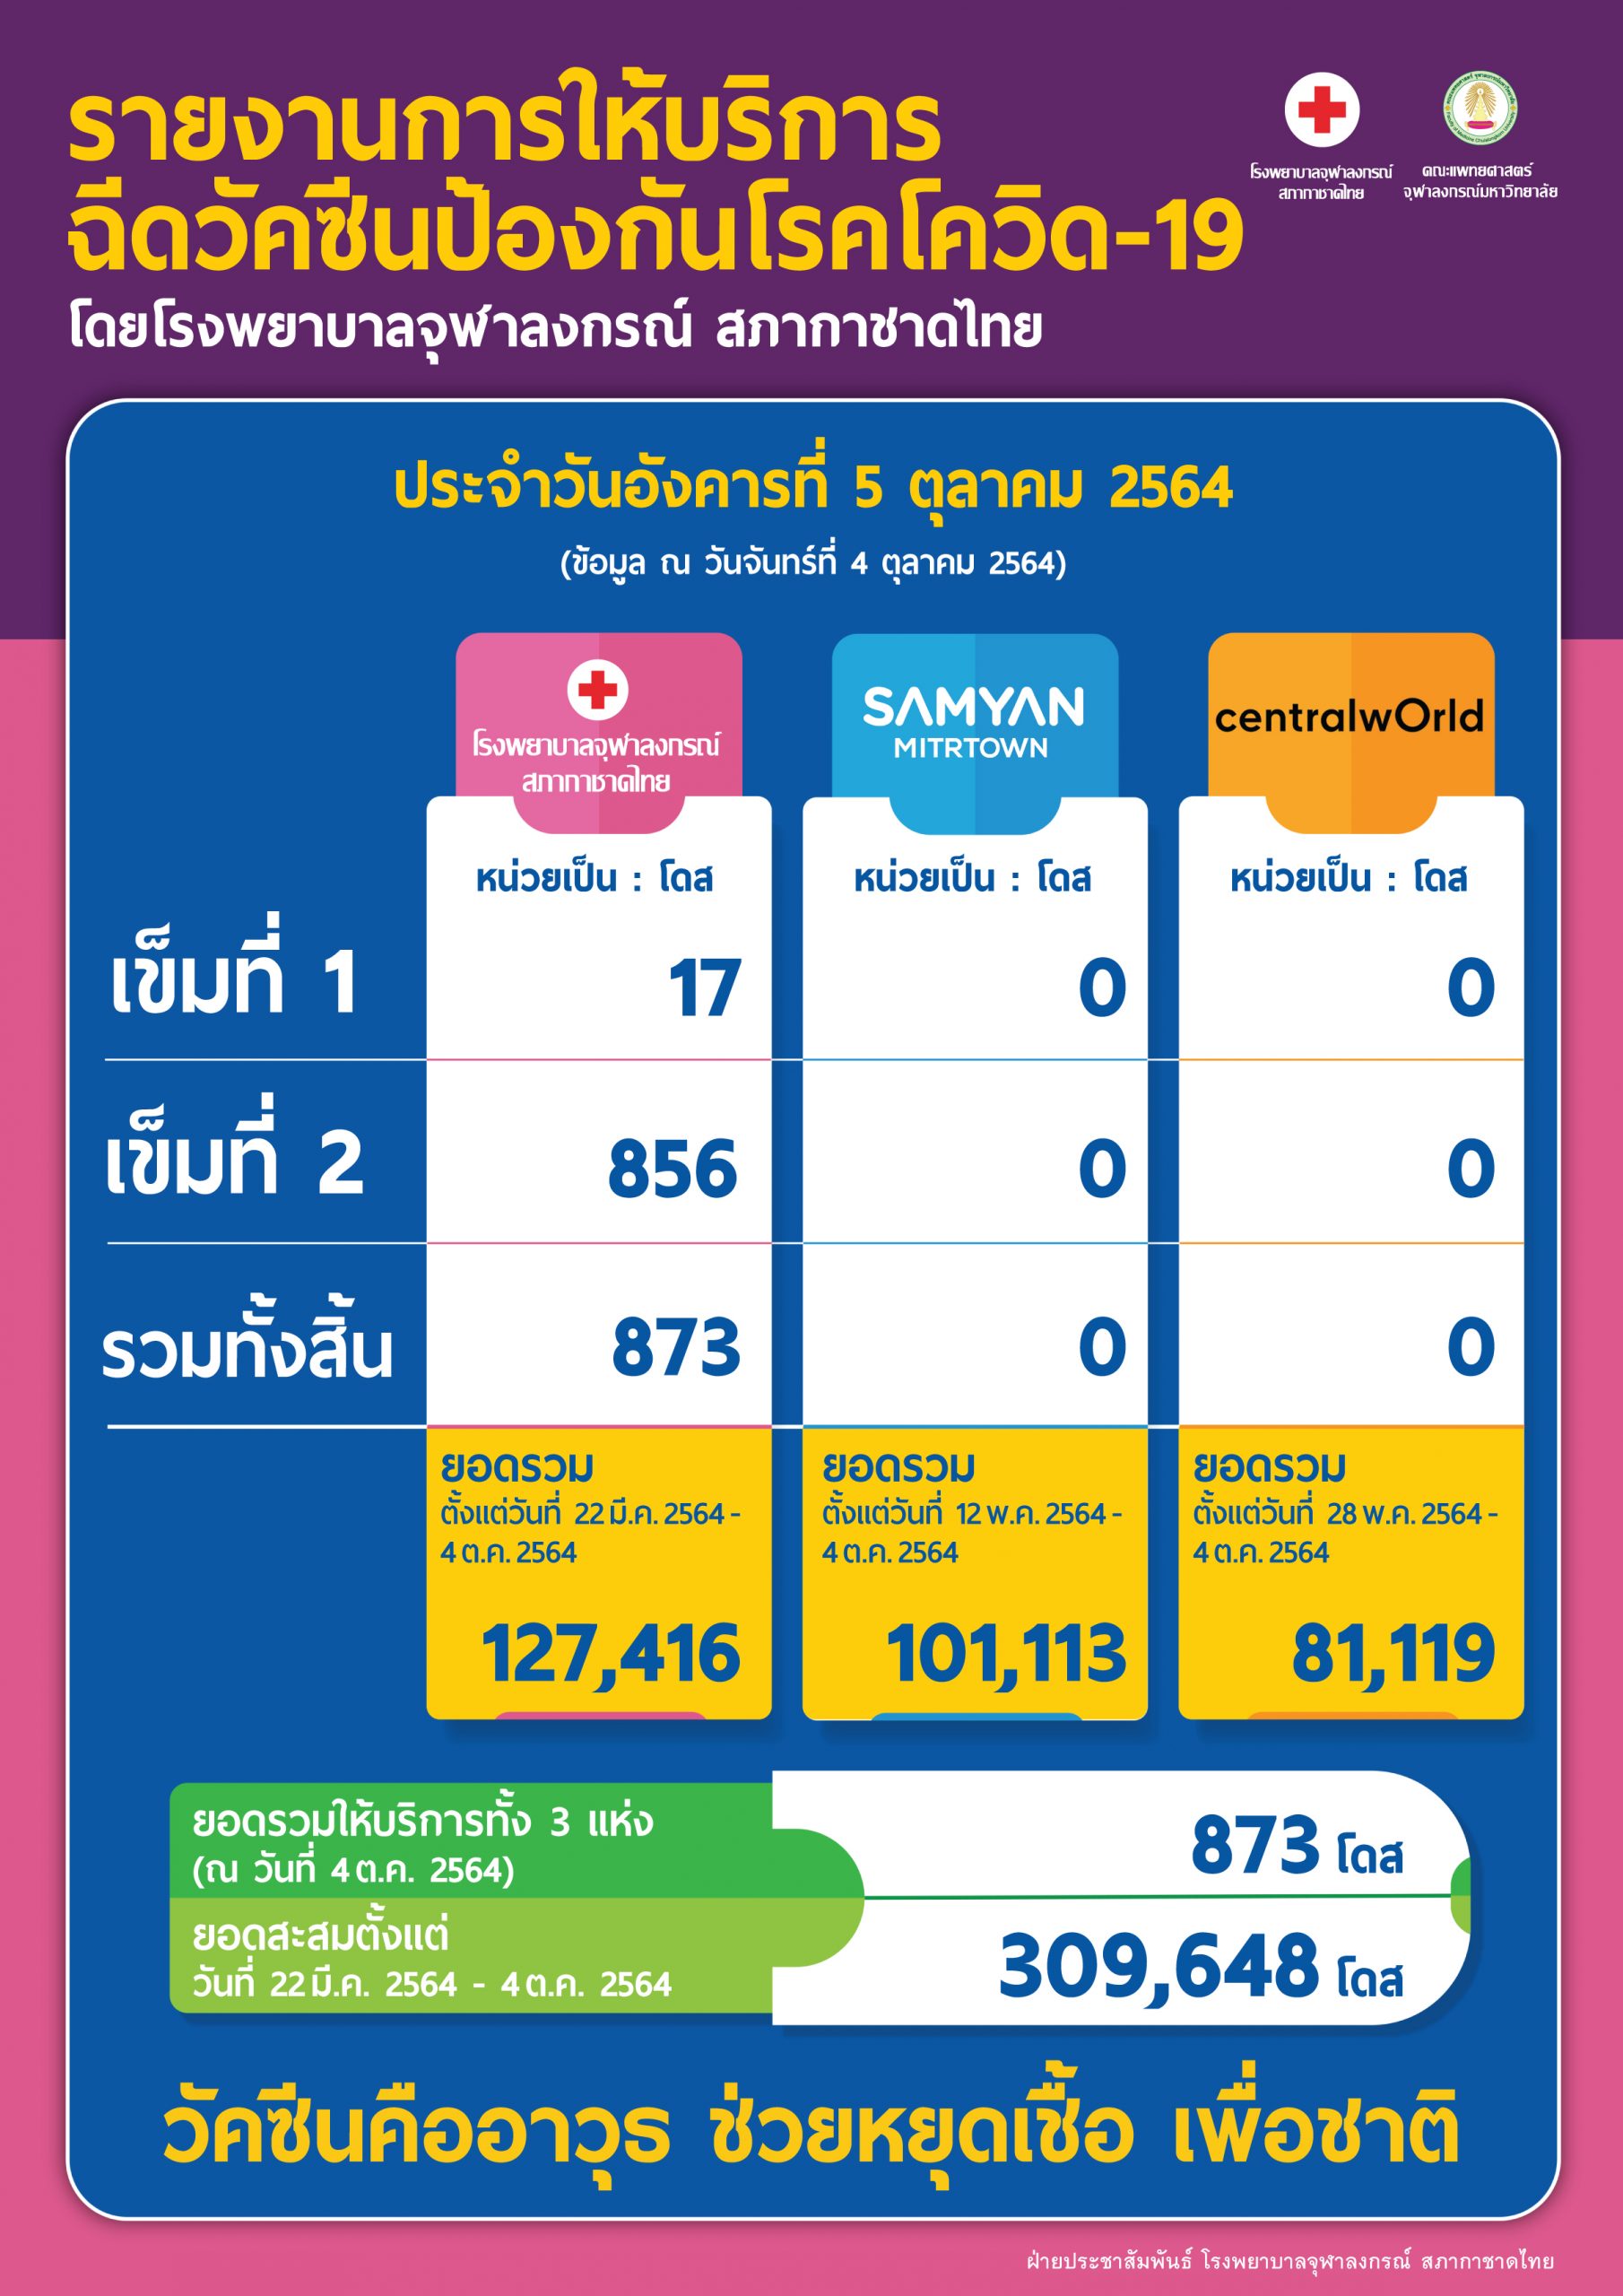 รายงานการให้บริการฉีดวัคซีนป้องกันโรคโควิด-19 โดยโรงพยาบาลจุฬาลงกรณ์ สภากาชาดไทย ประจำวันอังคารที่ 5 ตุลาคม 2564